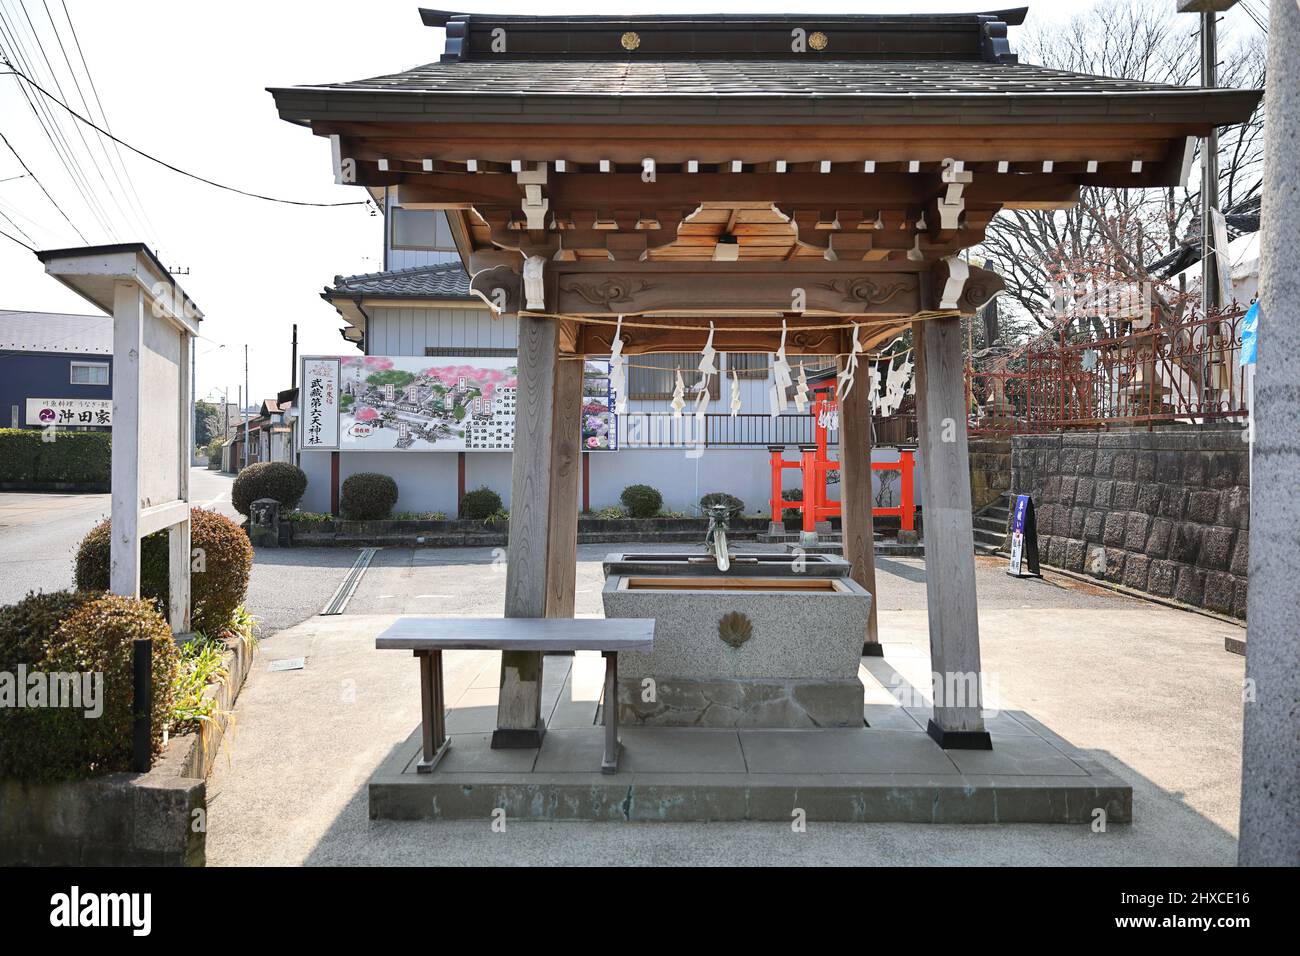 Musashidai Rokuten-Schrein Saitama , Japan 1752 Oto, Iwatsukiku, Saitama 339-0014 Präfektur Saitama 武蔵第六天神社 Stockfoto